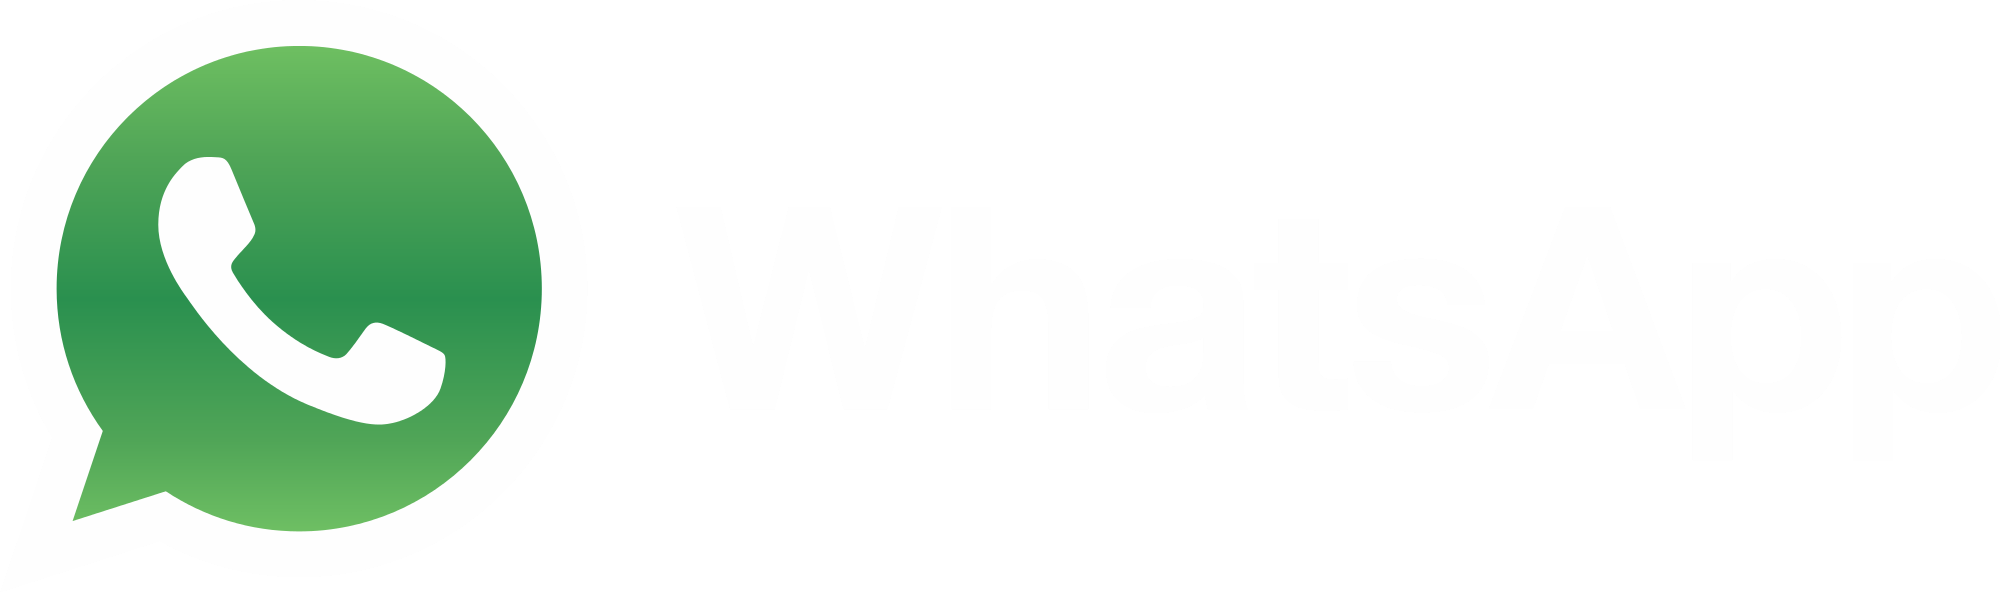 Ватсап ярлык на рабочий. Логотип ватсап. WHATSAPP надпись. Логотип вацап без фона. Ватсап на белом фоне.